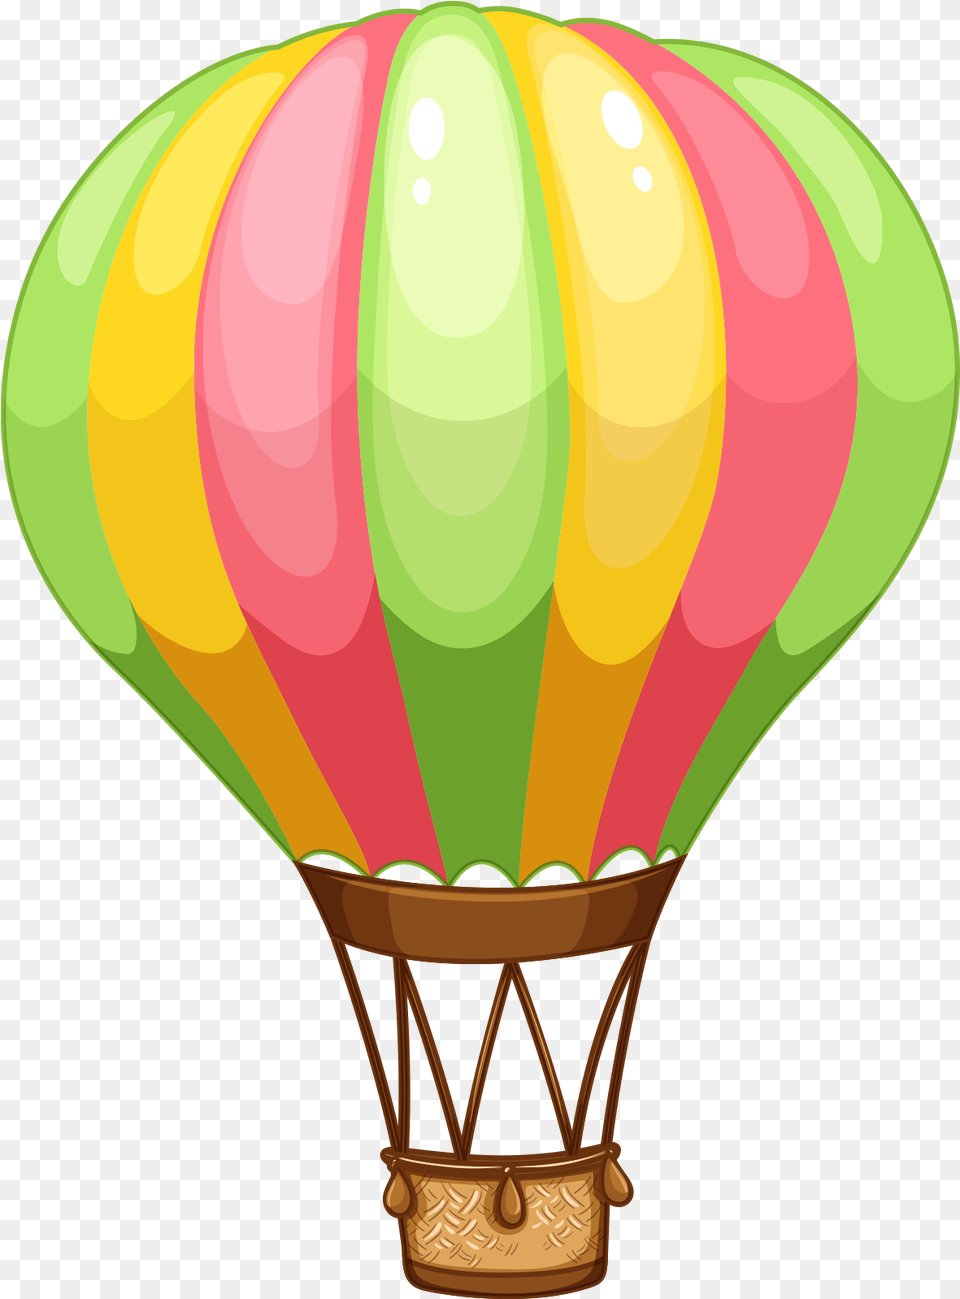 Hot Air Ballon Hot Air Balloon Clipart, Aircraft, Hot Air Balloon, Transportation, Vehicle Png Image